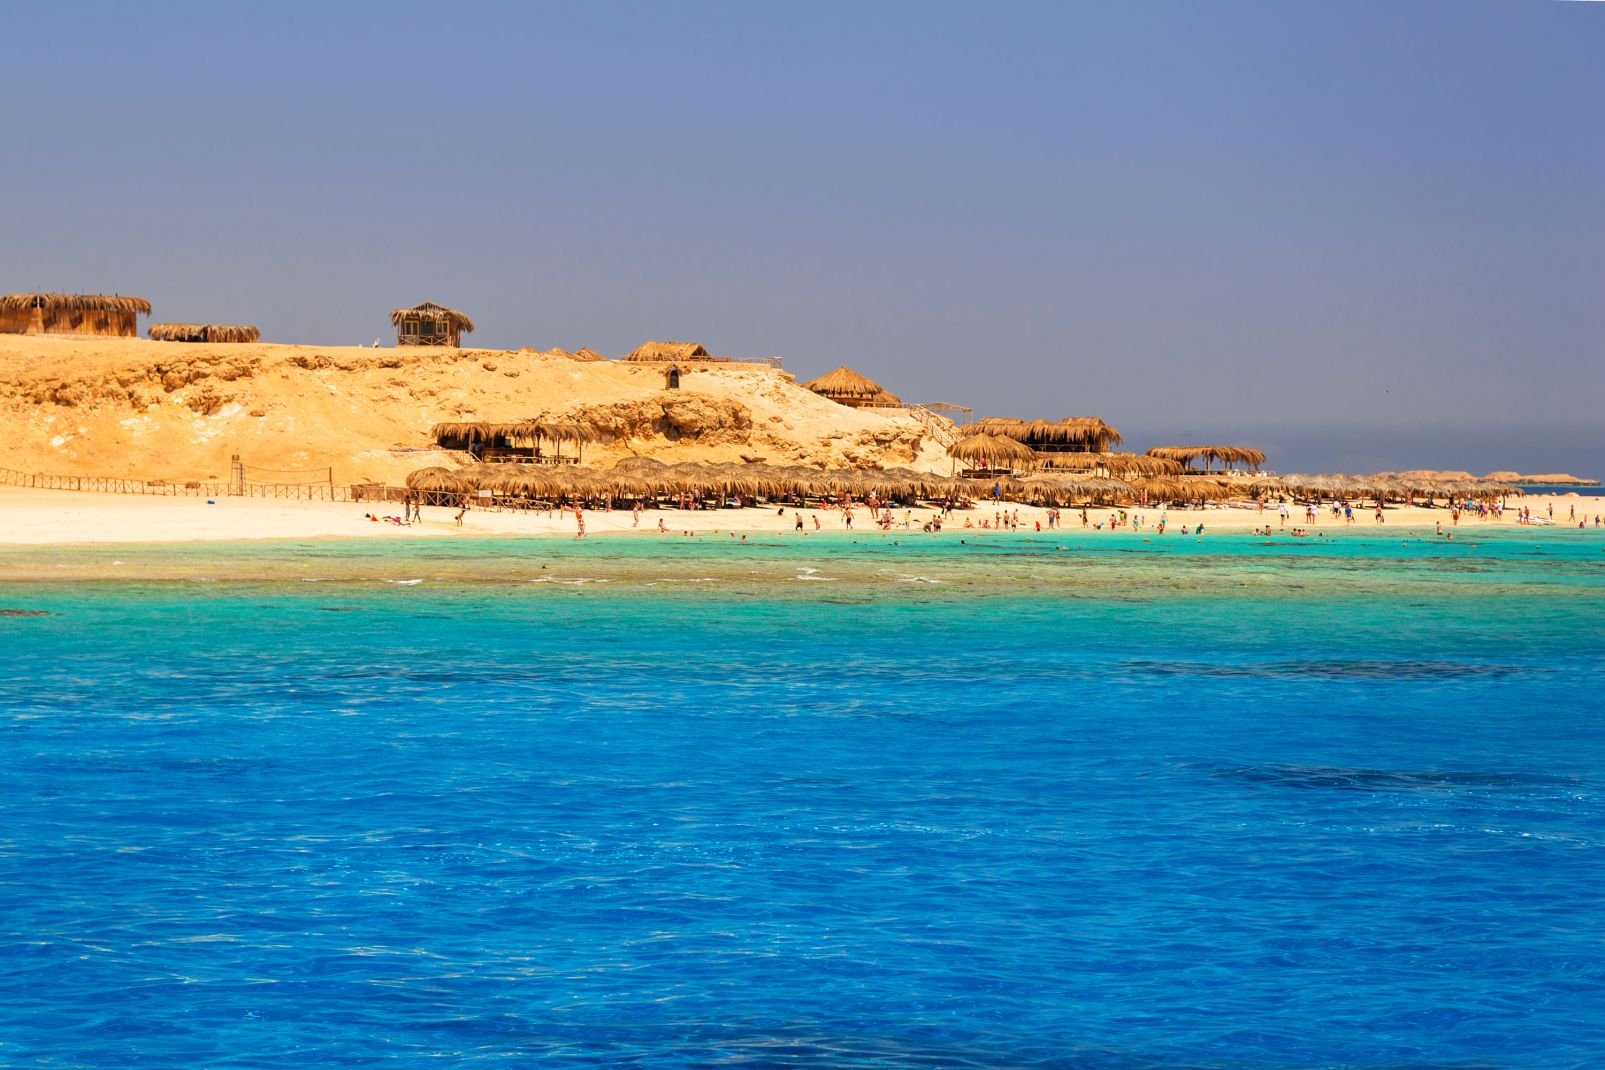 Autrefois village de pêcheurs situé au sud de l'entrée du golfe de Suez, sur la côte Est du désert arabique, Hurghada s'étend désormais sur plus de 60 km de côte encombrée d'hôtels imposants et d'un nombre incroyable de chantiers à l'arrêt aligné au bord d'une voie express qui longe, à distance, la mer. Très animée, en hiver surtout, la station vit principalement au rythme des vacances scolaires des ...